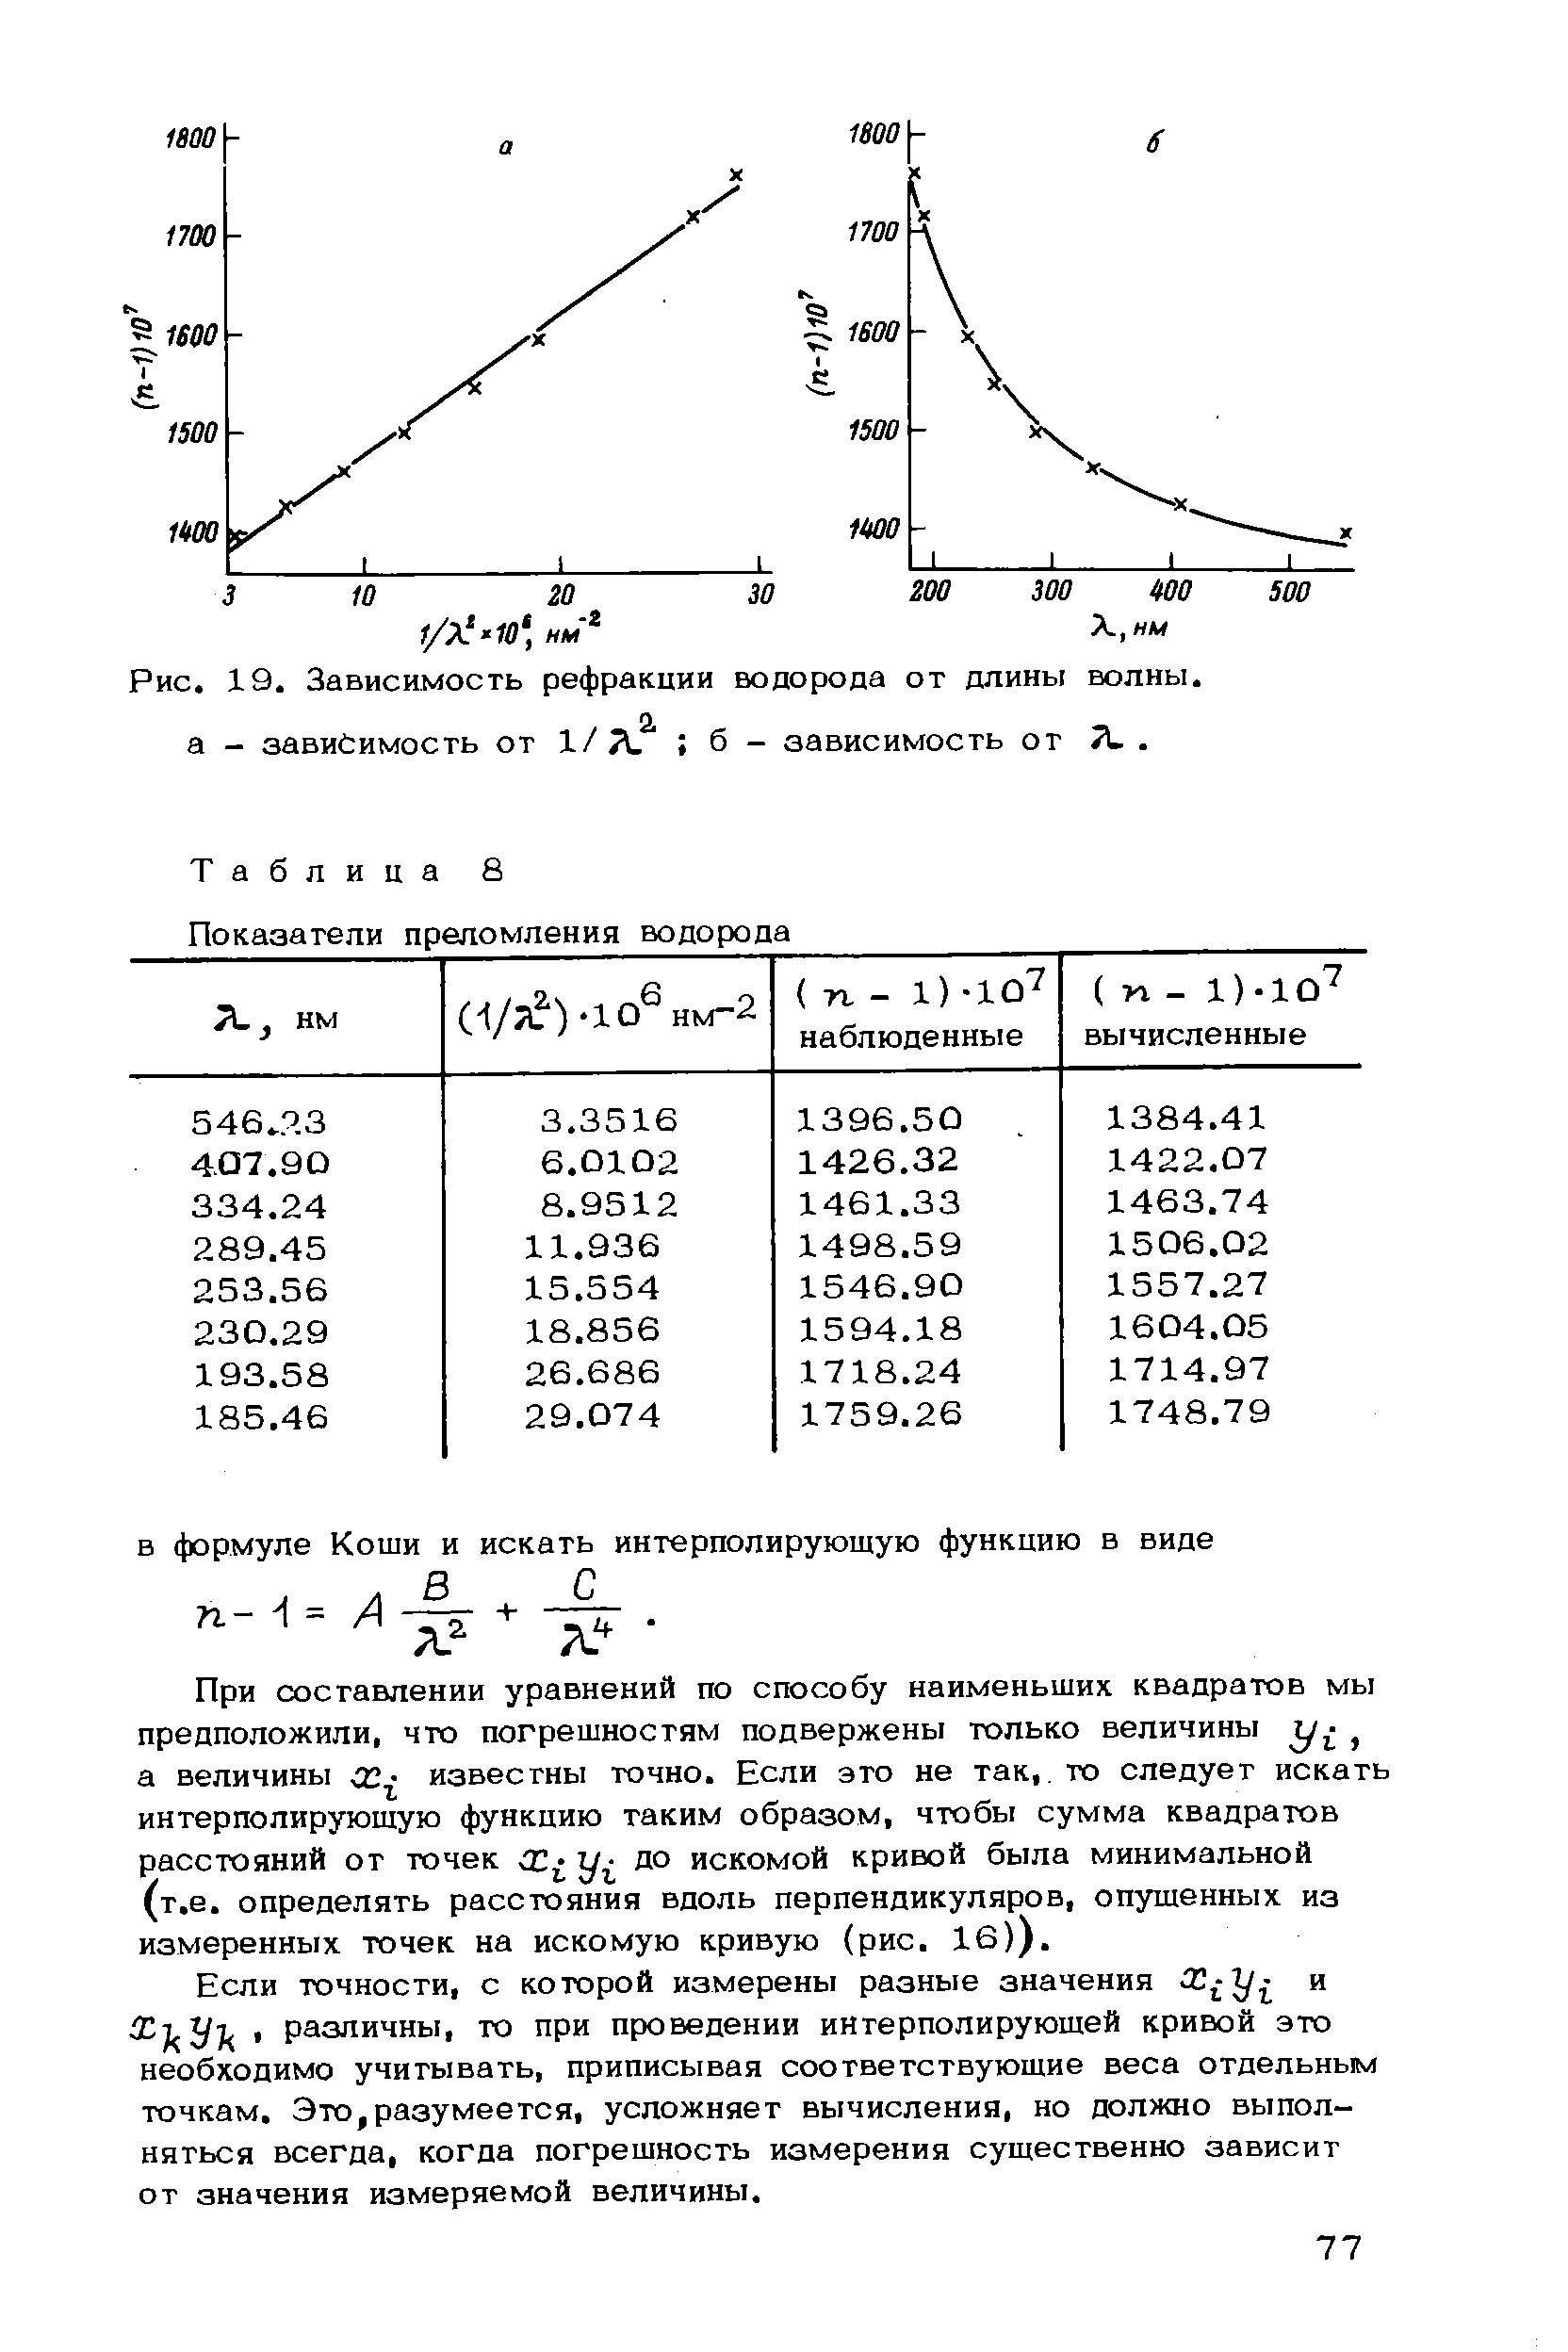 Таблица 8 <a href="/info/5501">Показатели преломления</a> водорода
